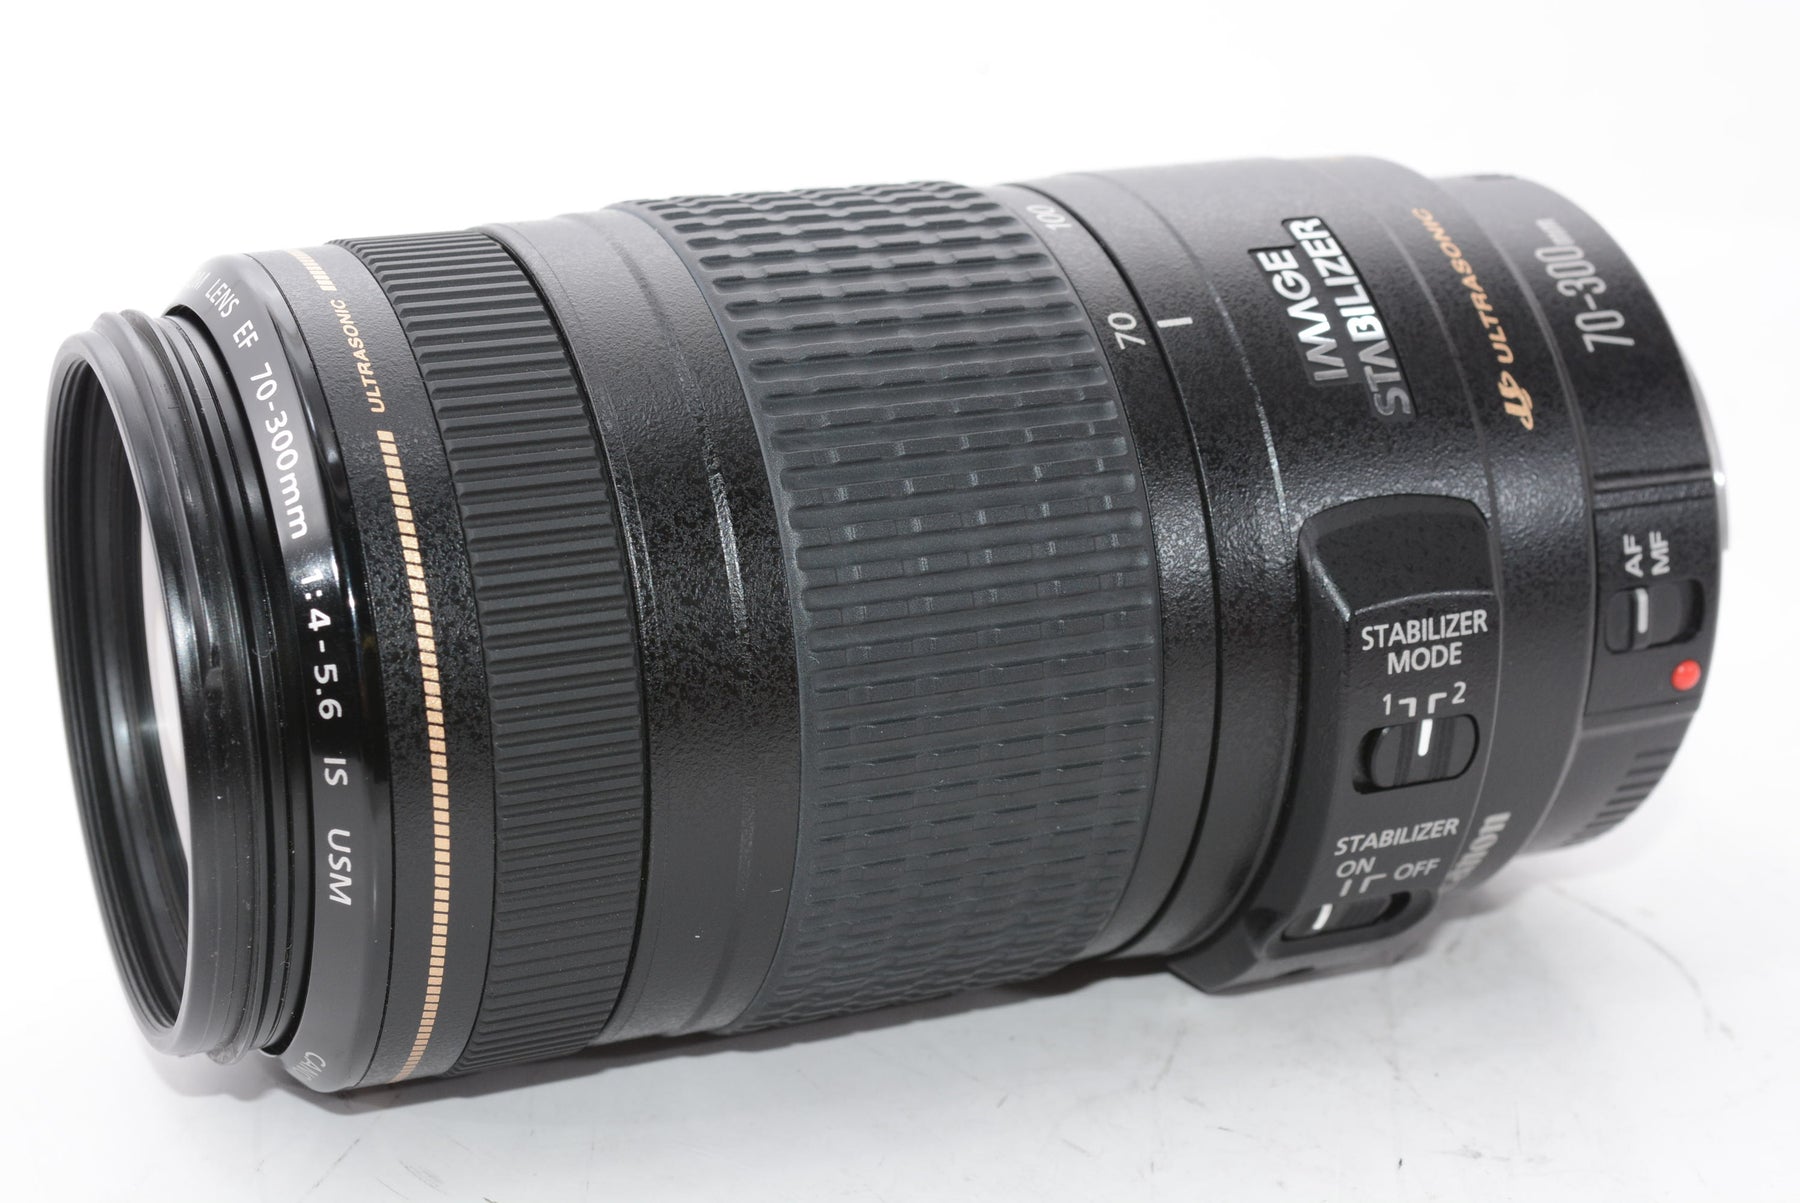 【外観特上級】Canon 望遠ズームレンズ EF70-300mm F4-5.6 IS USM フルサイズ対応